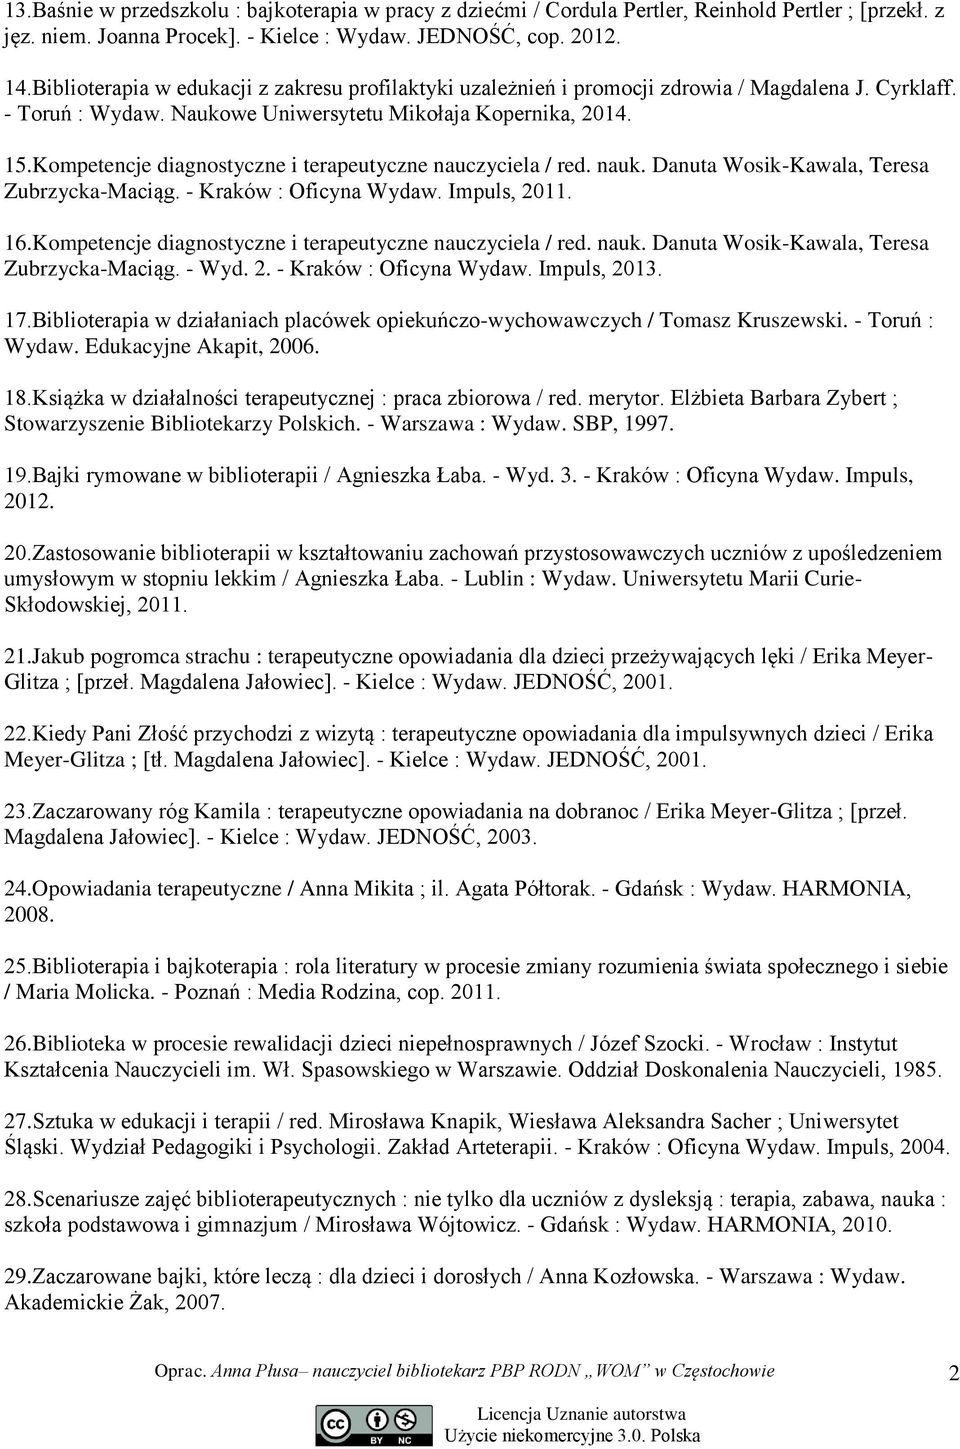 Kompetencje diagnostyczne i terapeutyczne nauczyciela / red. nauk. Danuta Wosik-Kawala, Teresa Zubrzycka-Maciąg. - Kraków : Oficyna Wydaw. Impuls, 2011. 16.